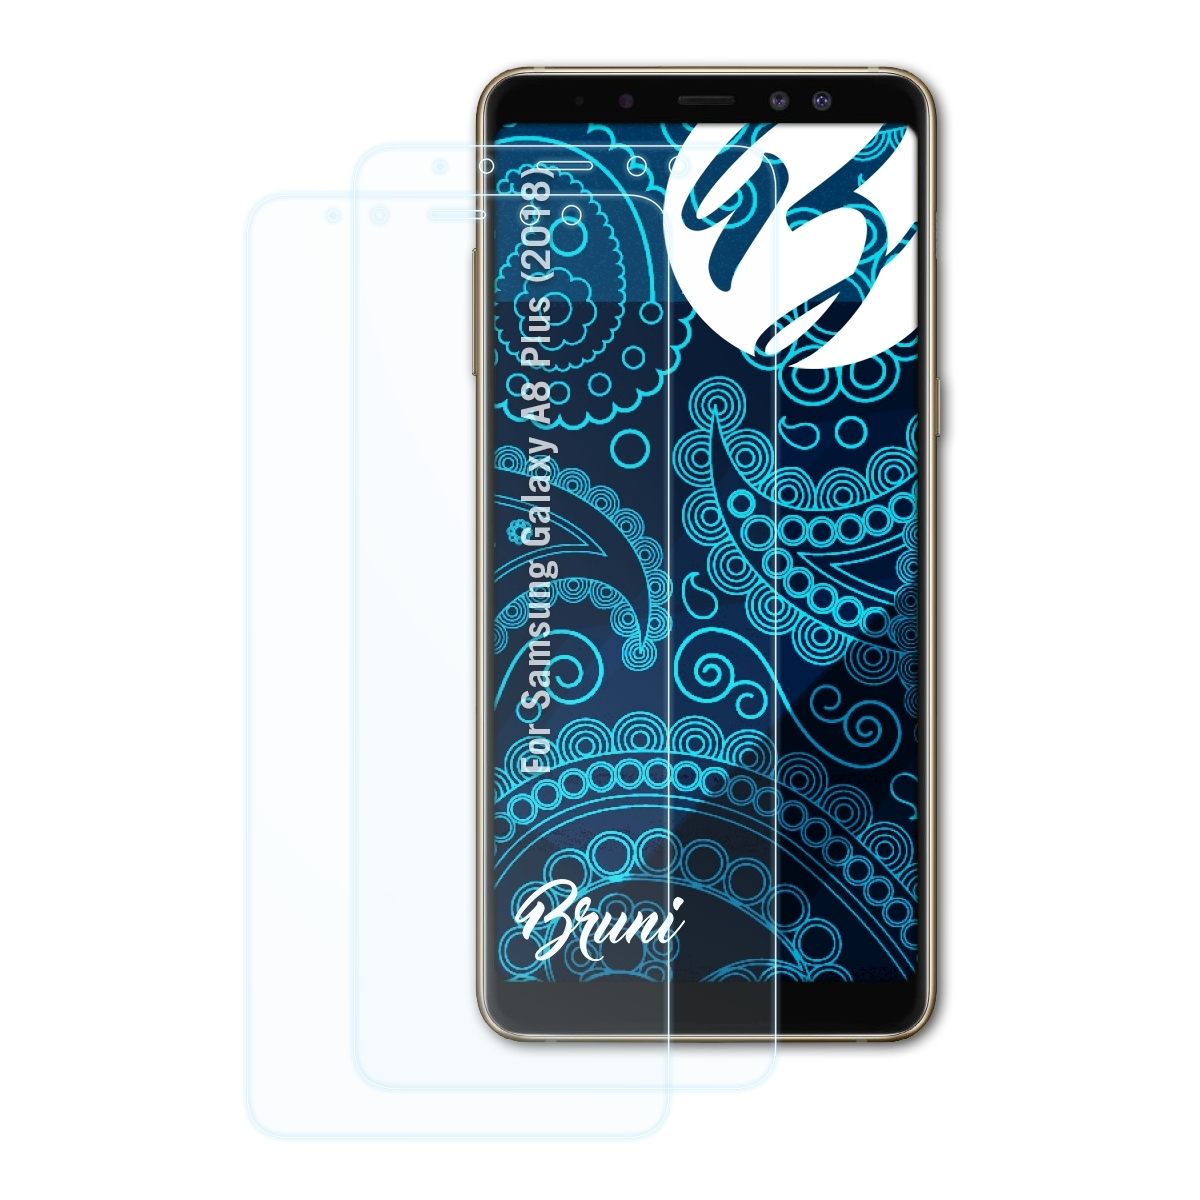 (2018)) BRUNI Samsung Galaxy A8 Schutzfolie(für Plus Basics-Clear 2x